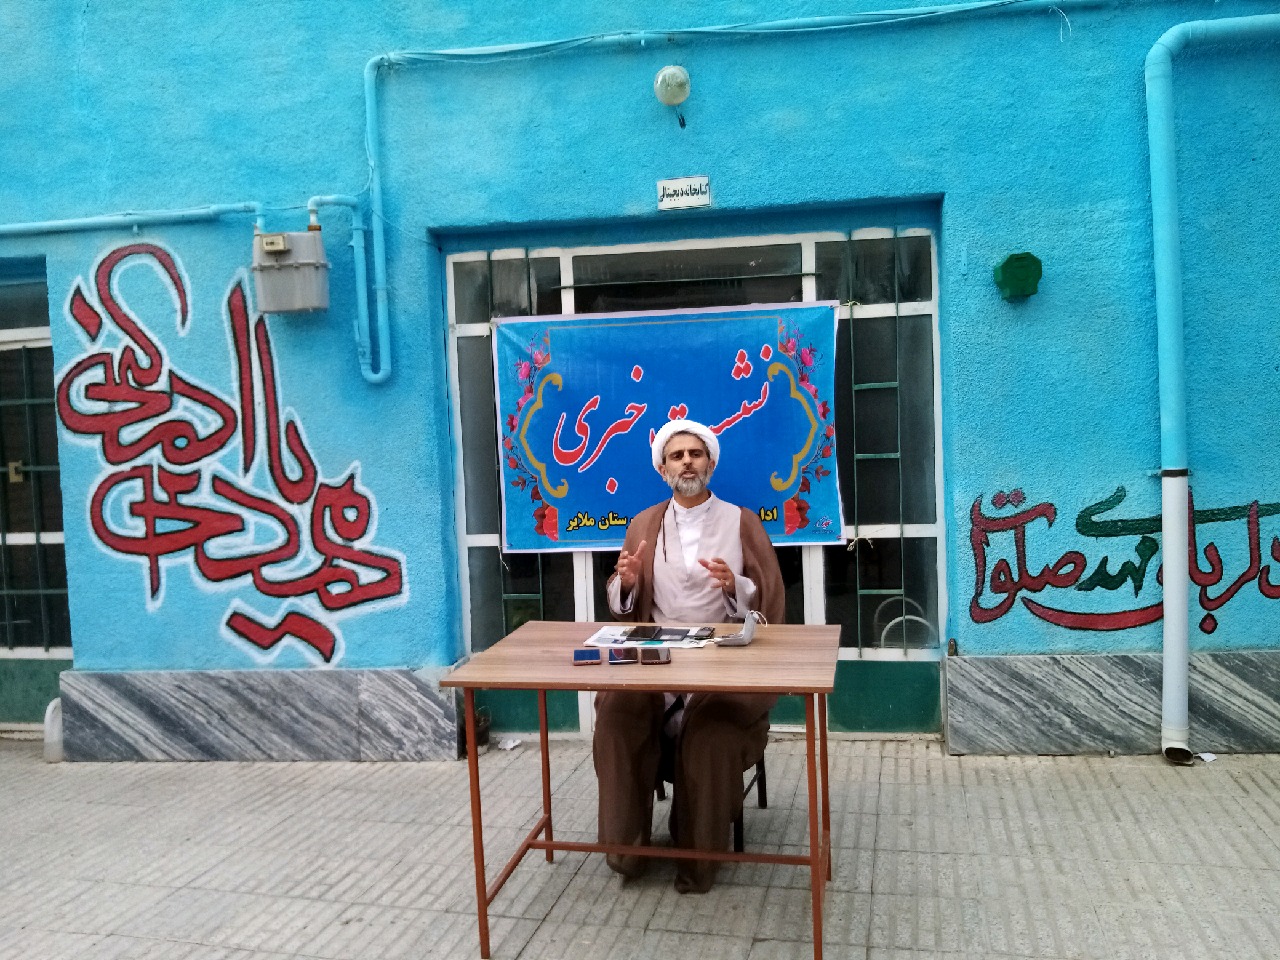 اجرای پویش محله همدل توسط سازمان تبلیغات اسلامی همدان